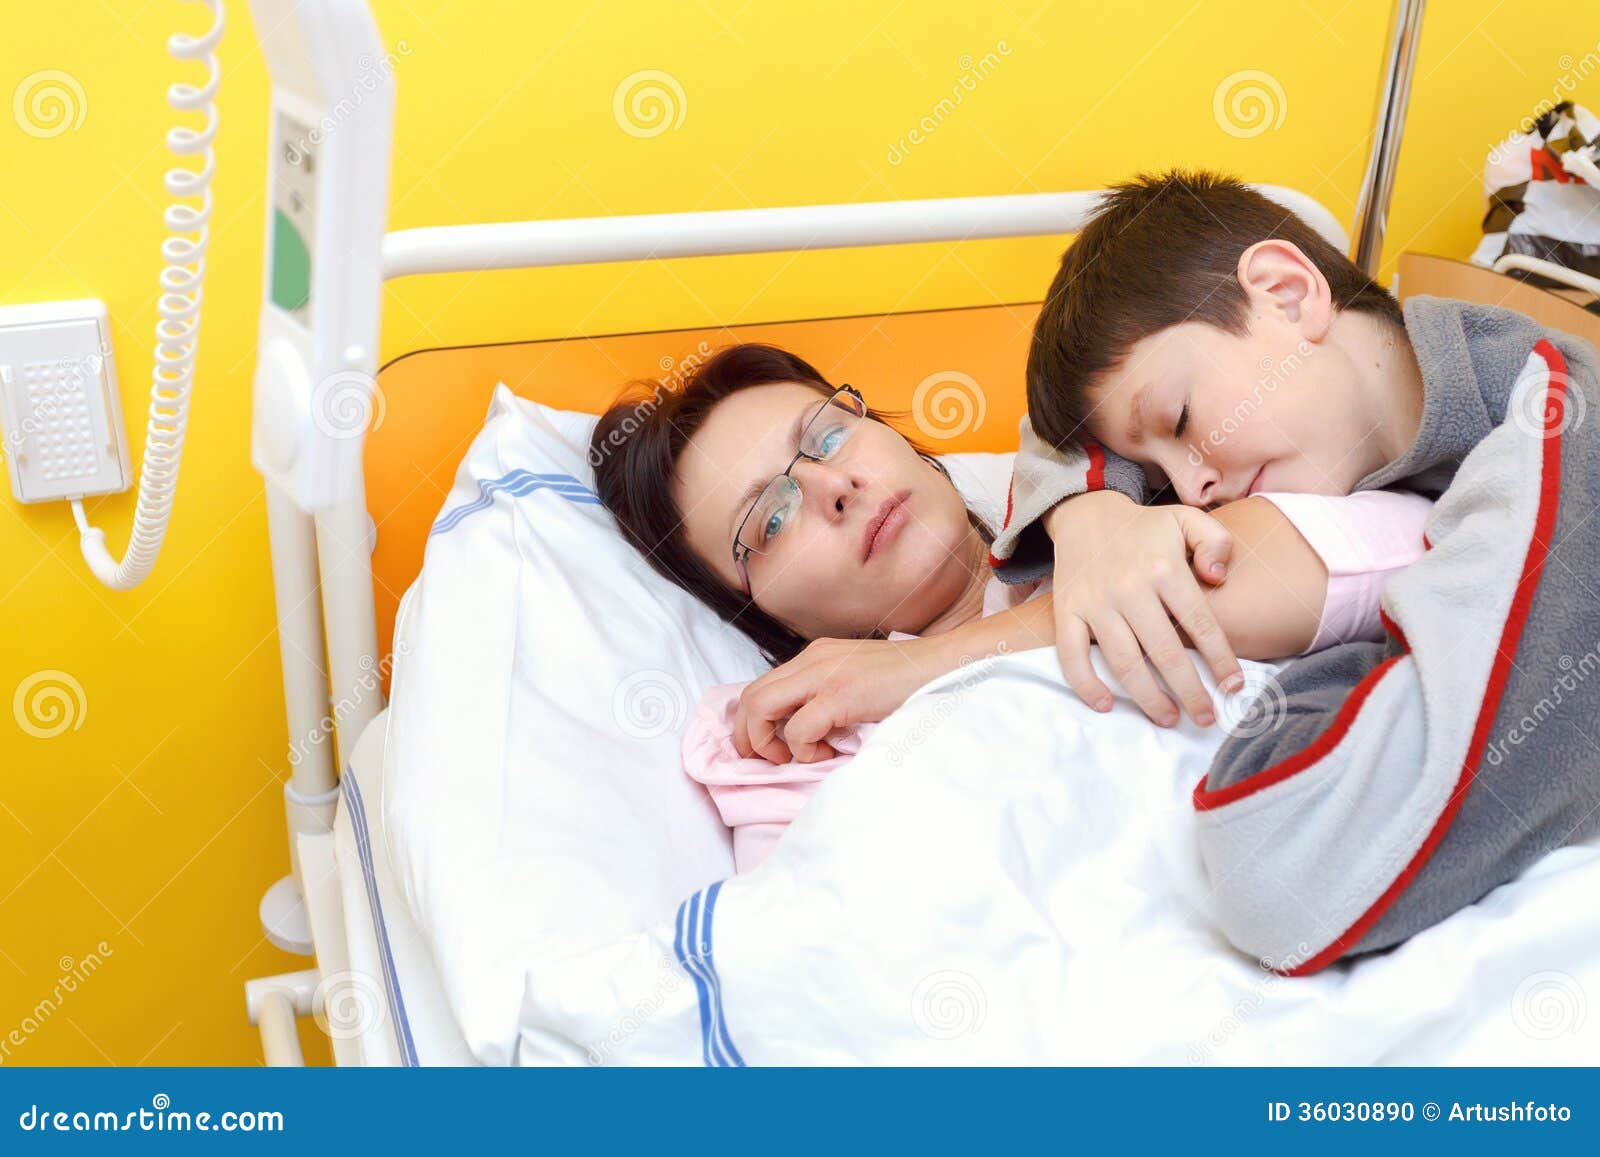 В больницу без мамы. Мама с ребенком в больнице.